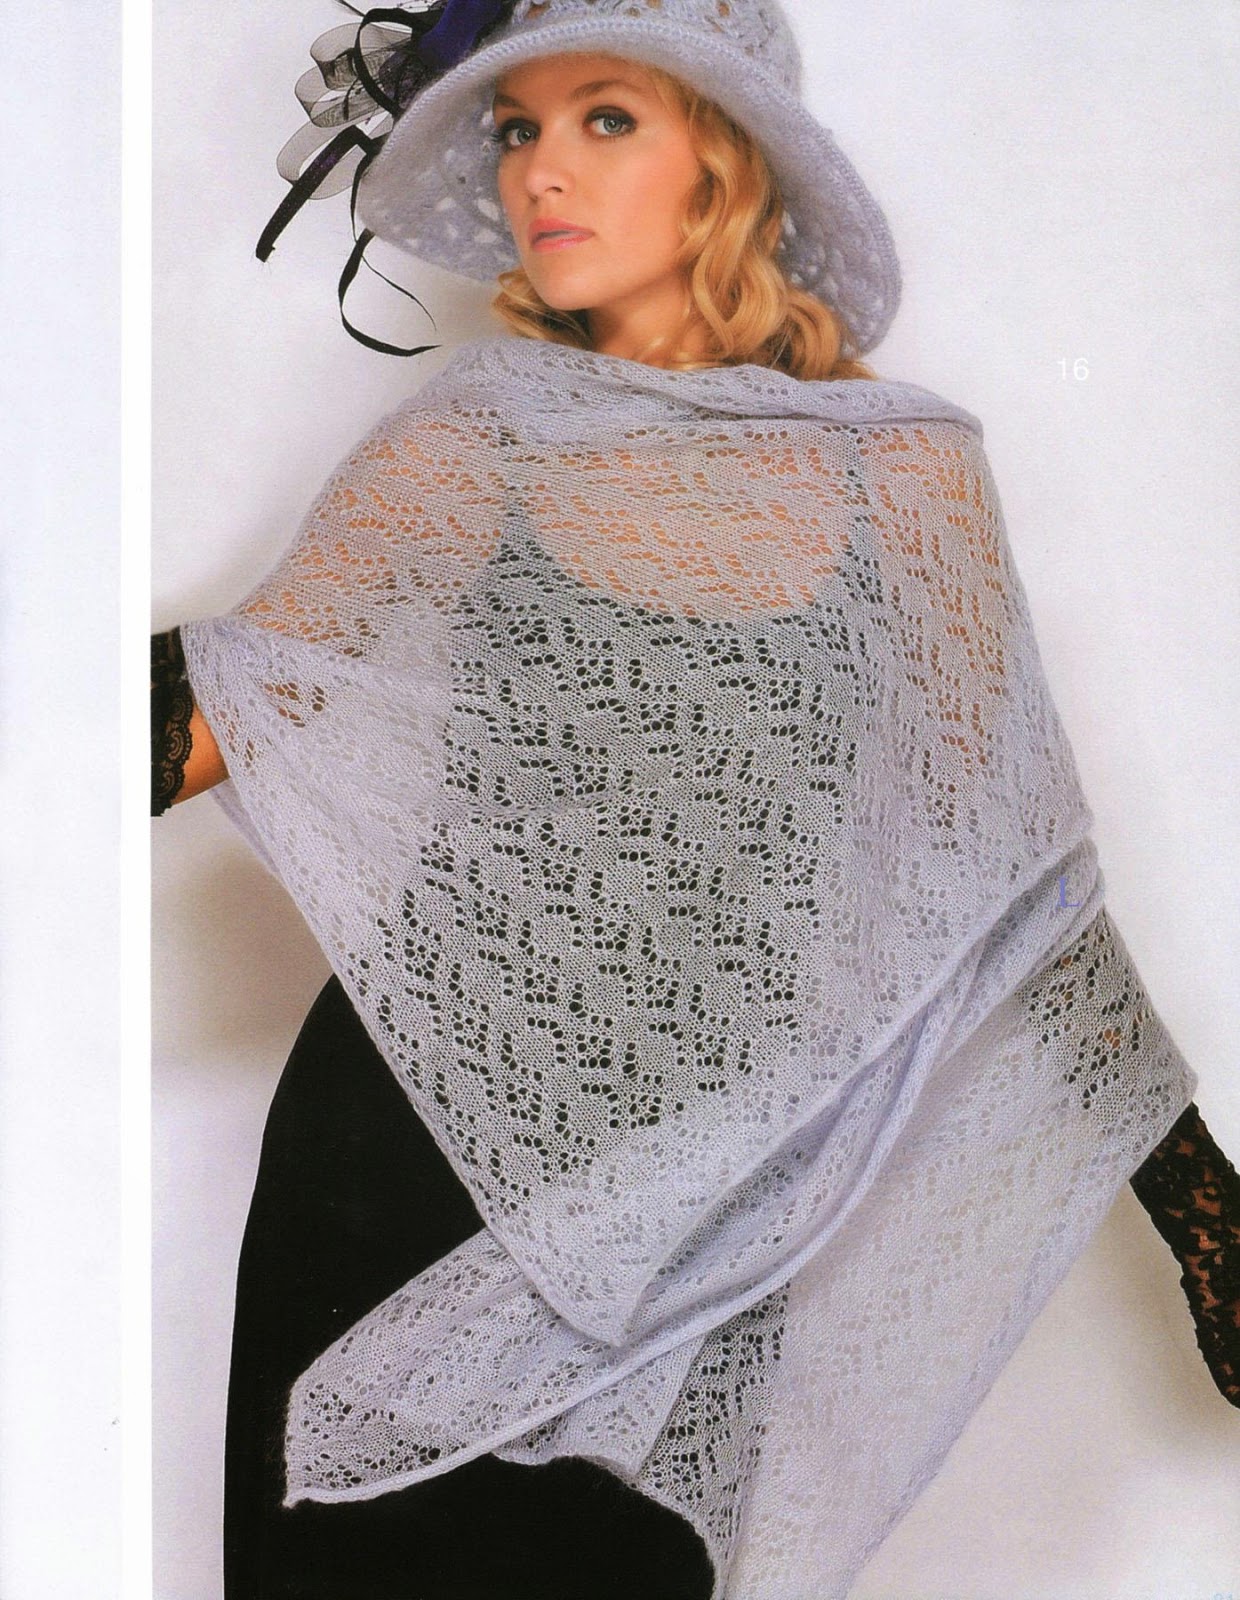 Irina Lace Knitting. Mohair Shawl. Patterns.